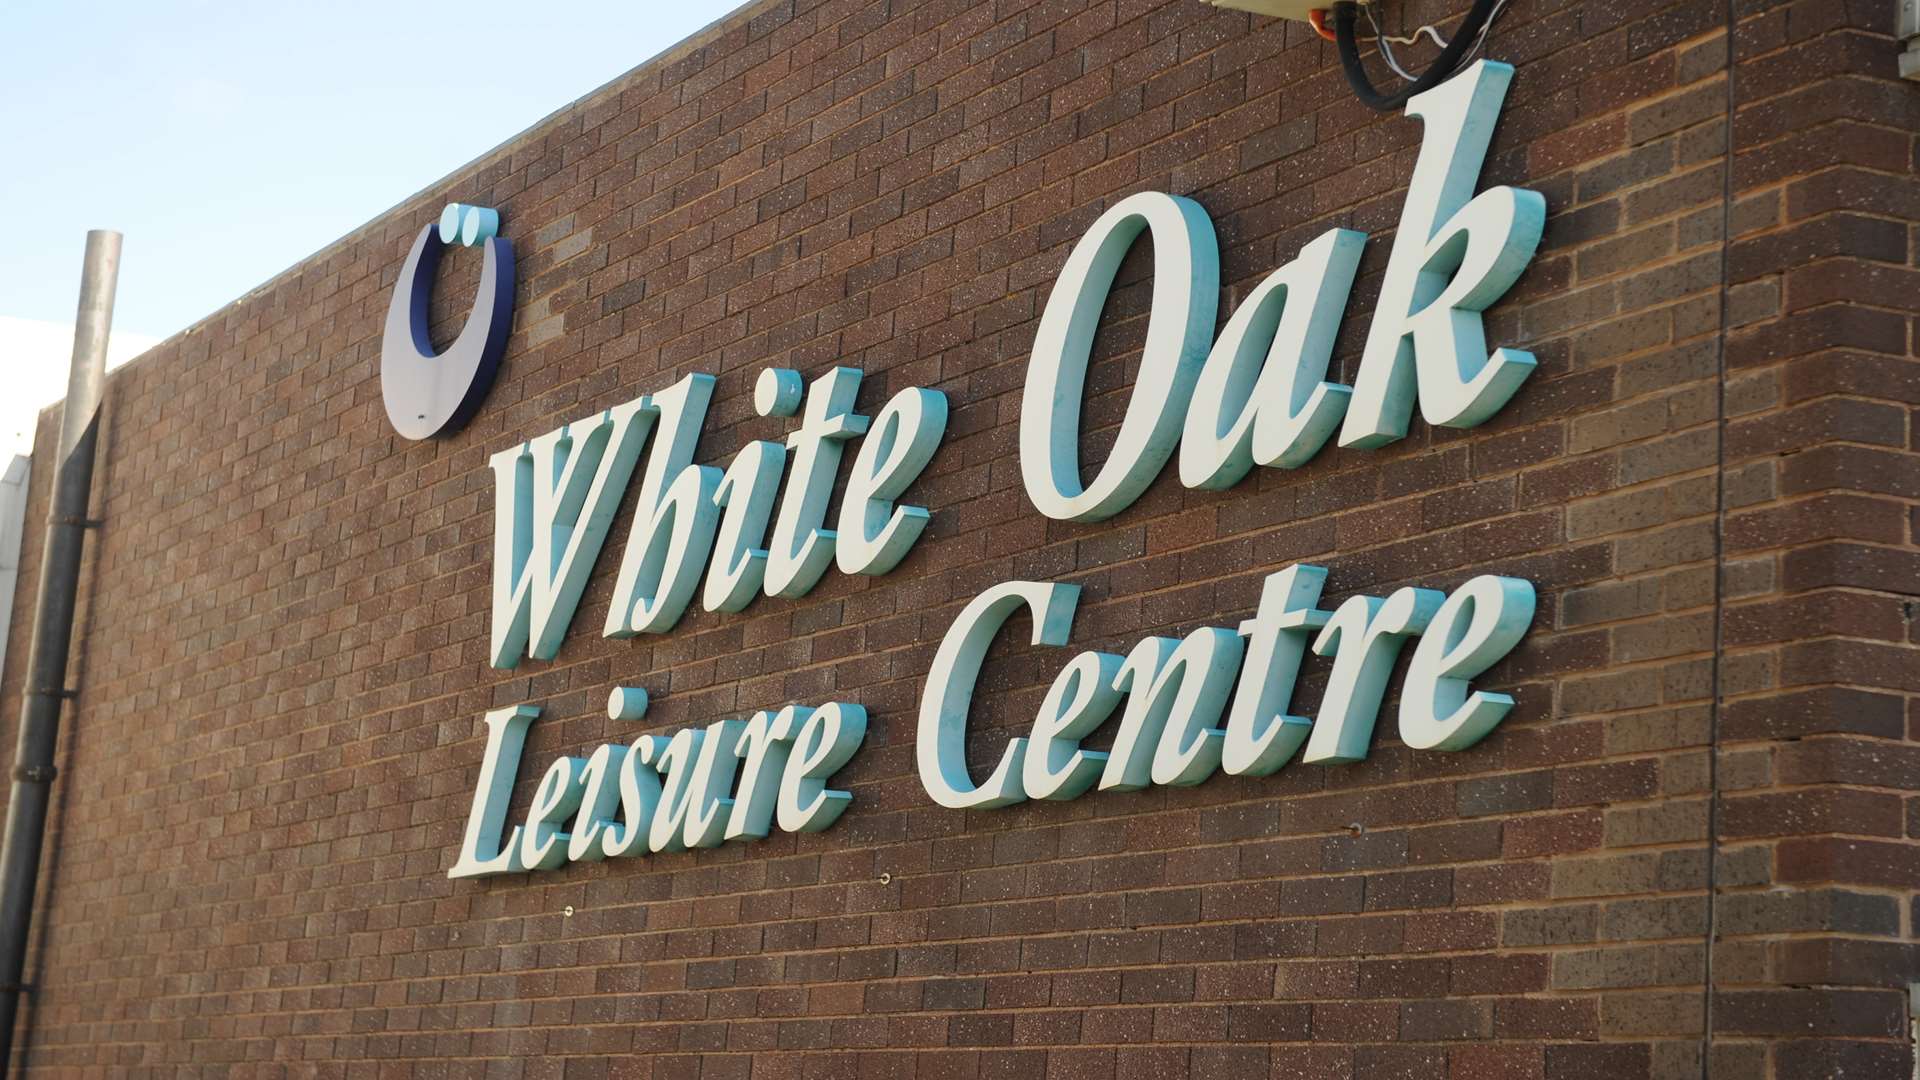 White Oak Leisure Centre